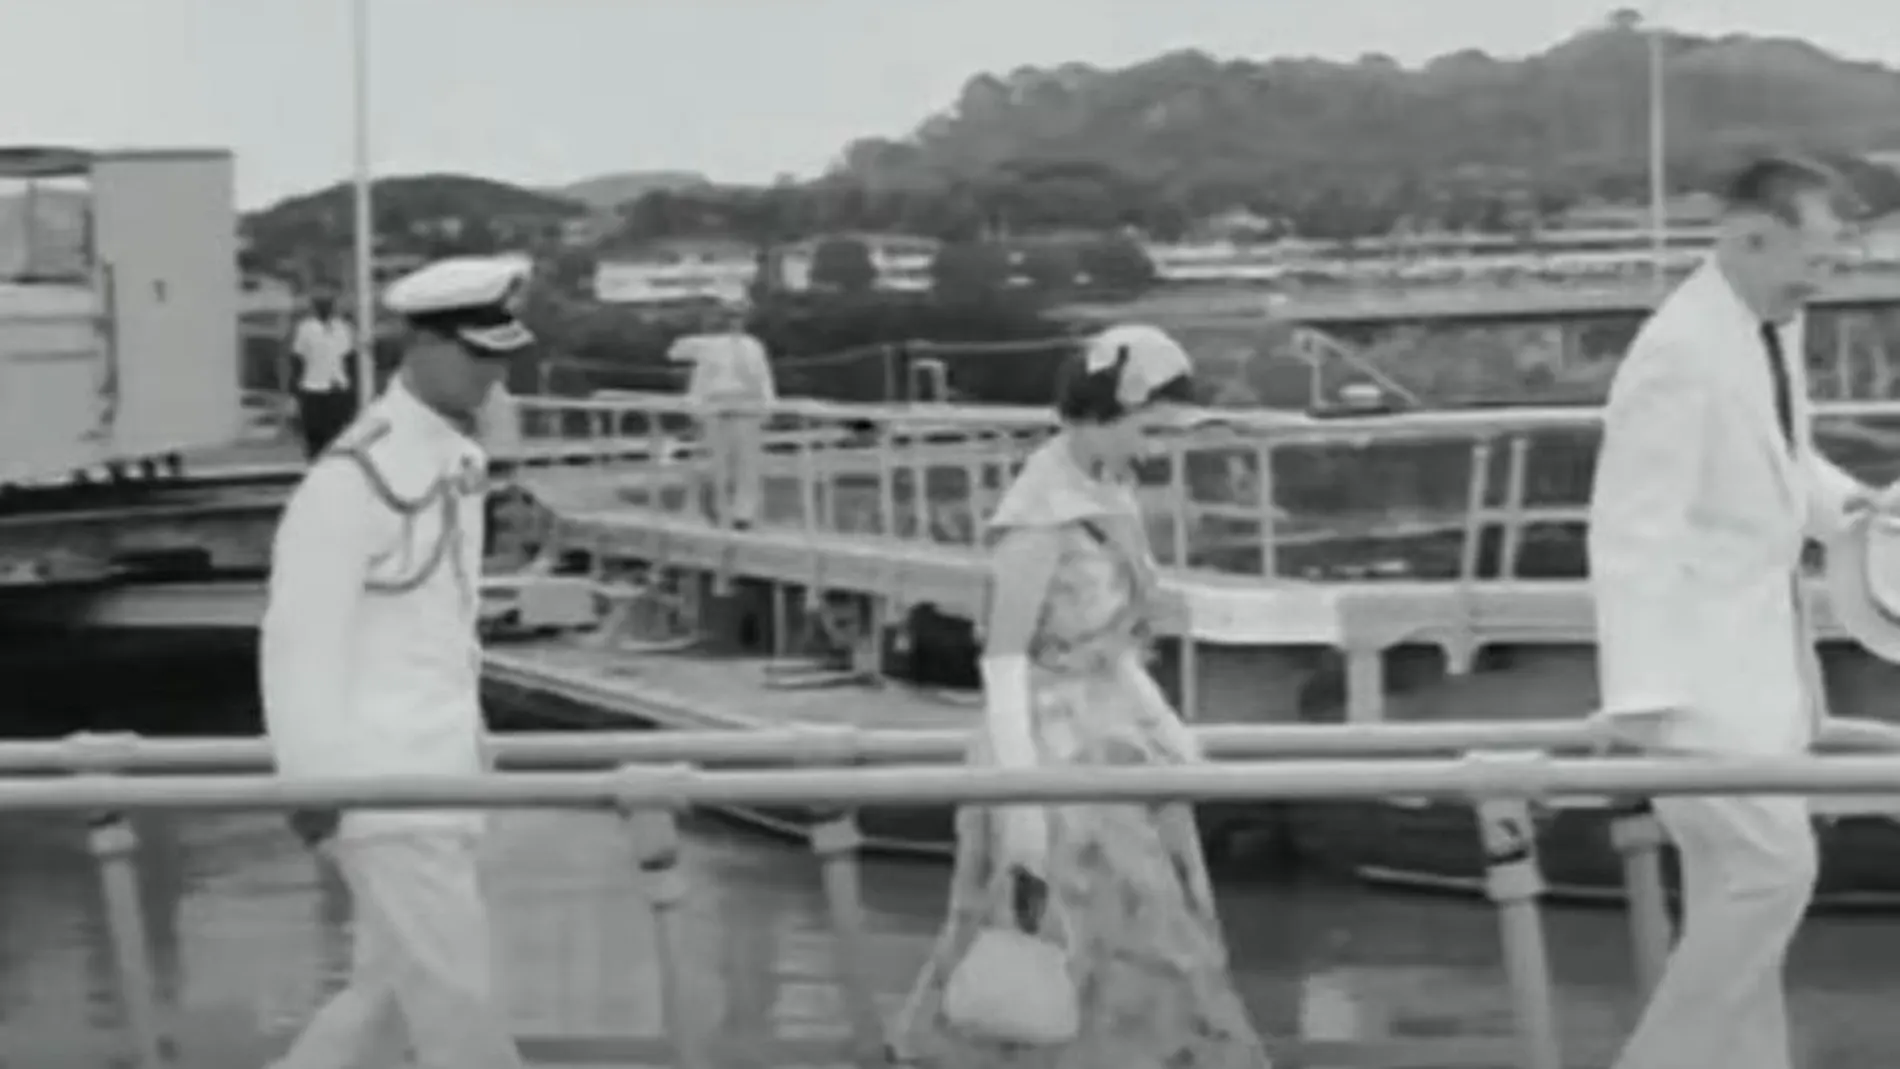 La reina Isabel II y su esposo el Duque de Edimburgo visitando las esclusas de Miraflores en el Canal de Panamá en 1953